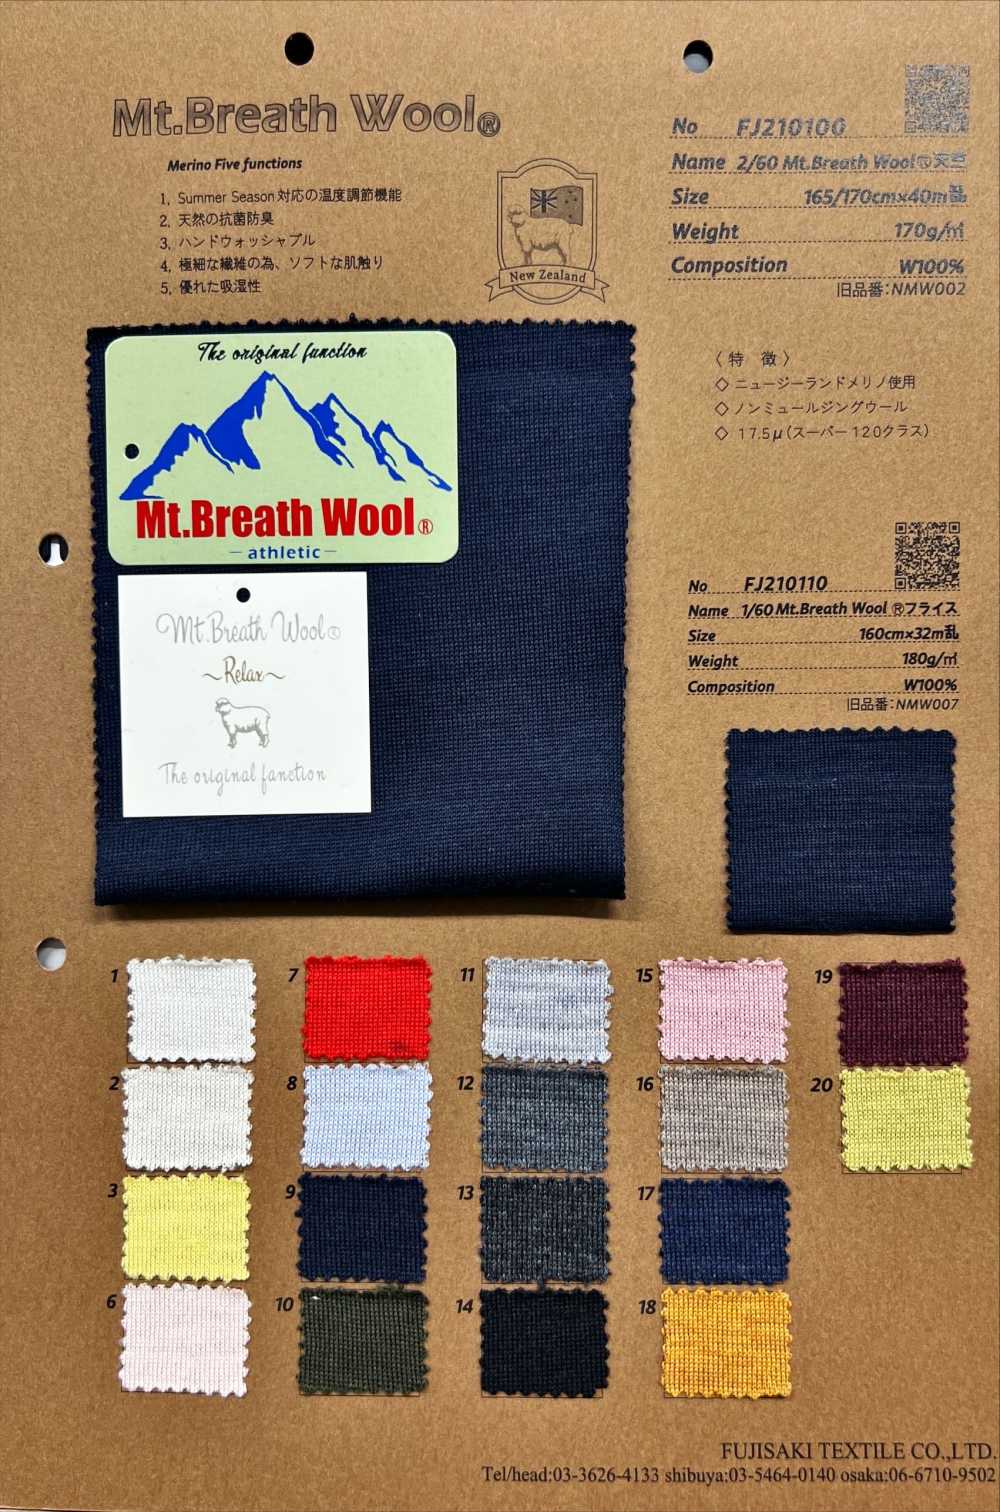 FJ210100 2/60 Mt.Breath Wool Jersey[Textile / Fabric] Fujisaki Textile